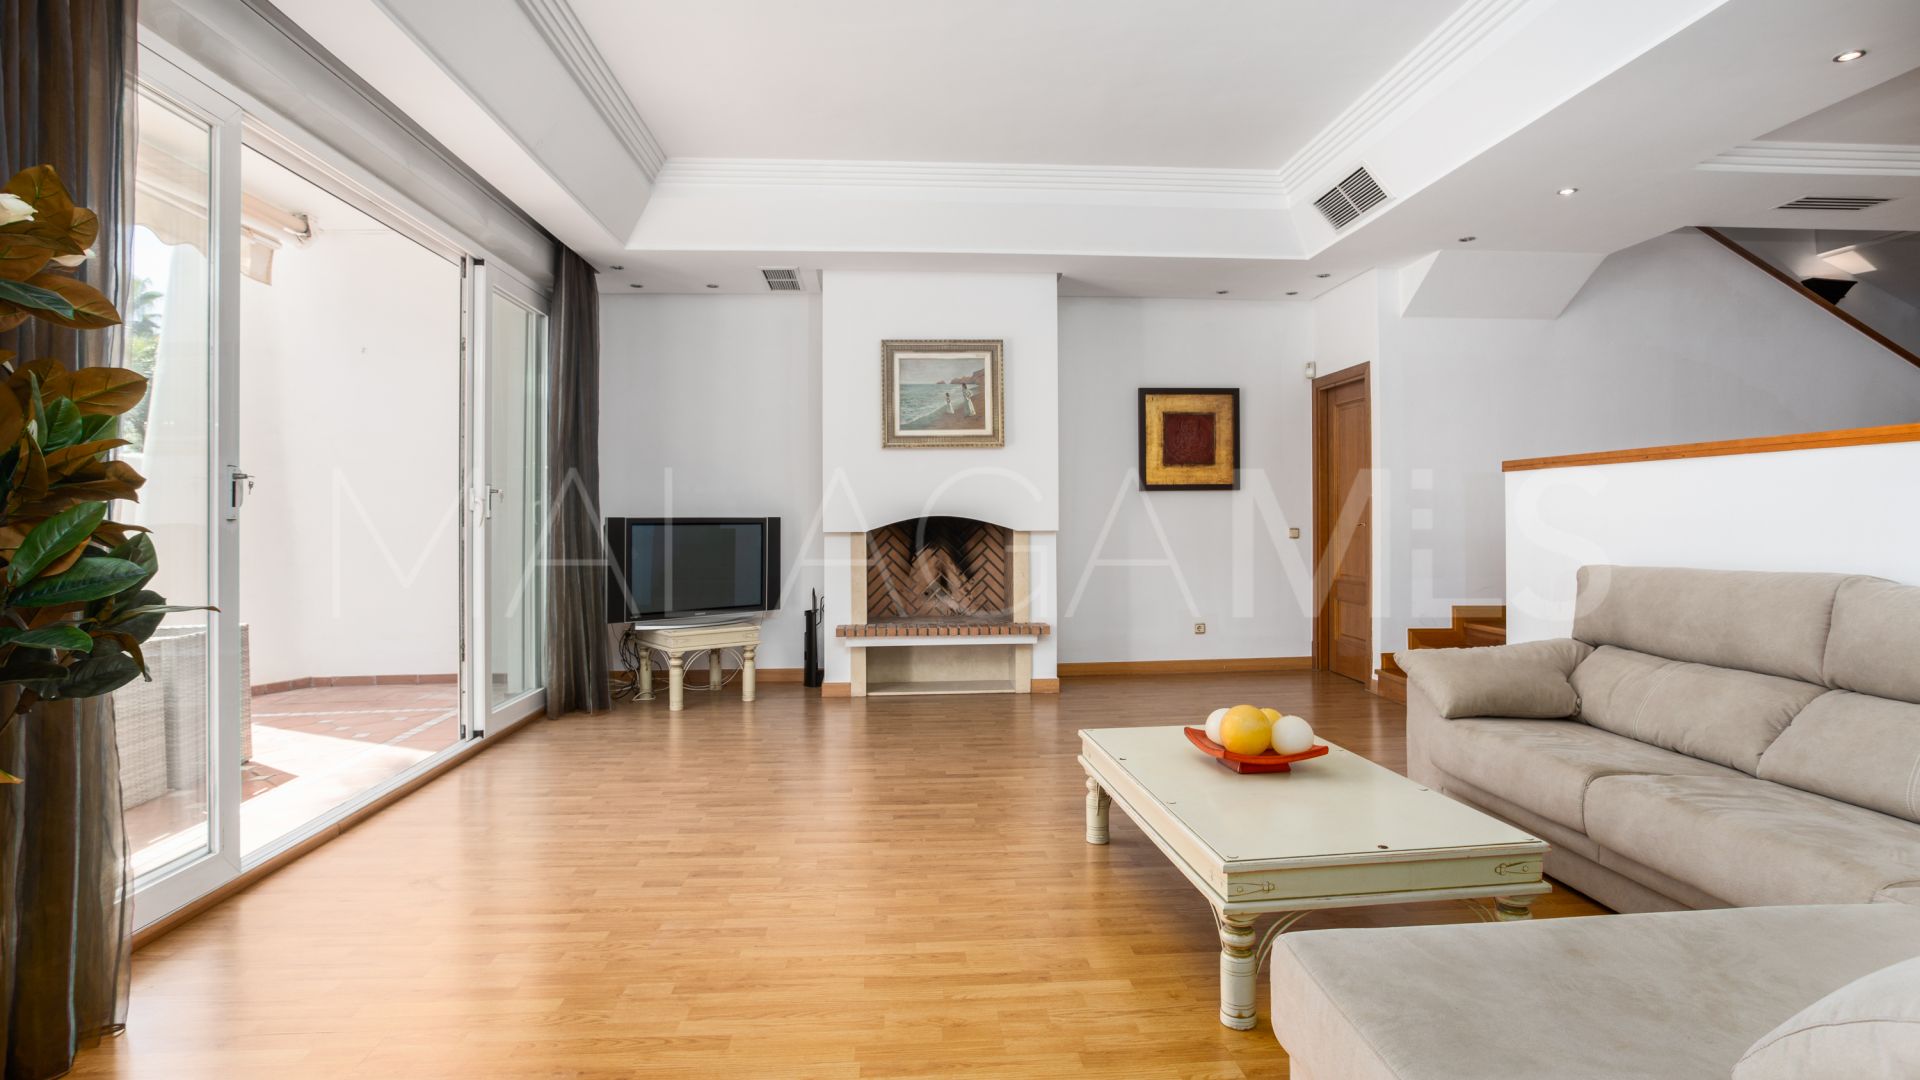 Pareado with 3 bedrooms for sale in Costalita del Mar